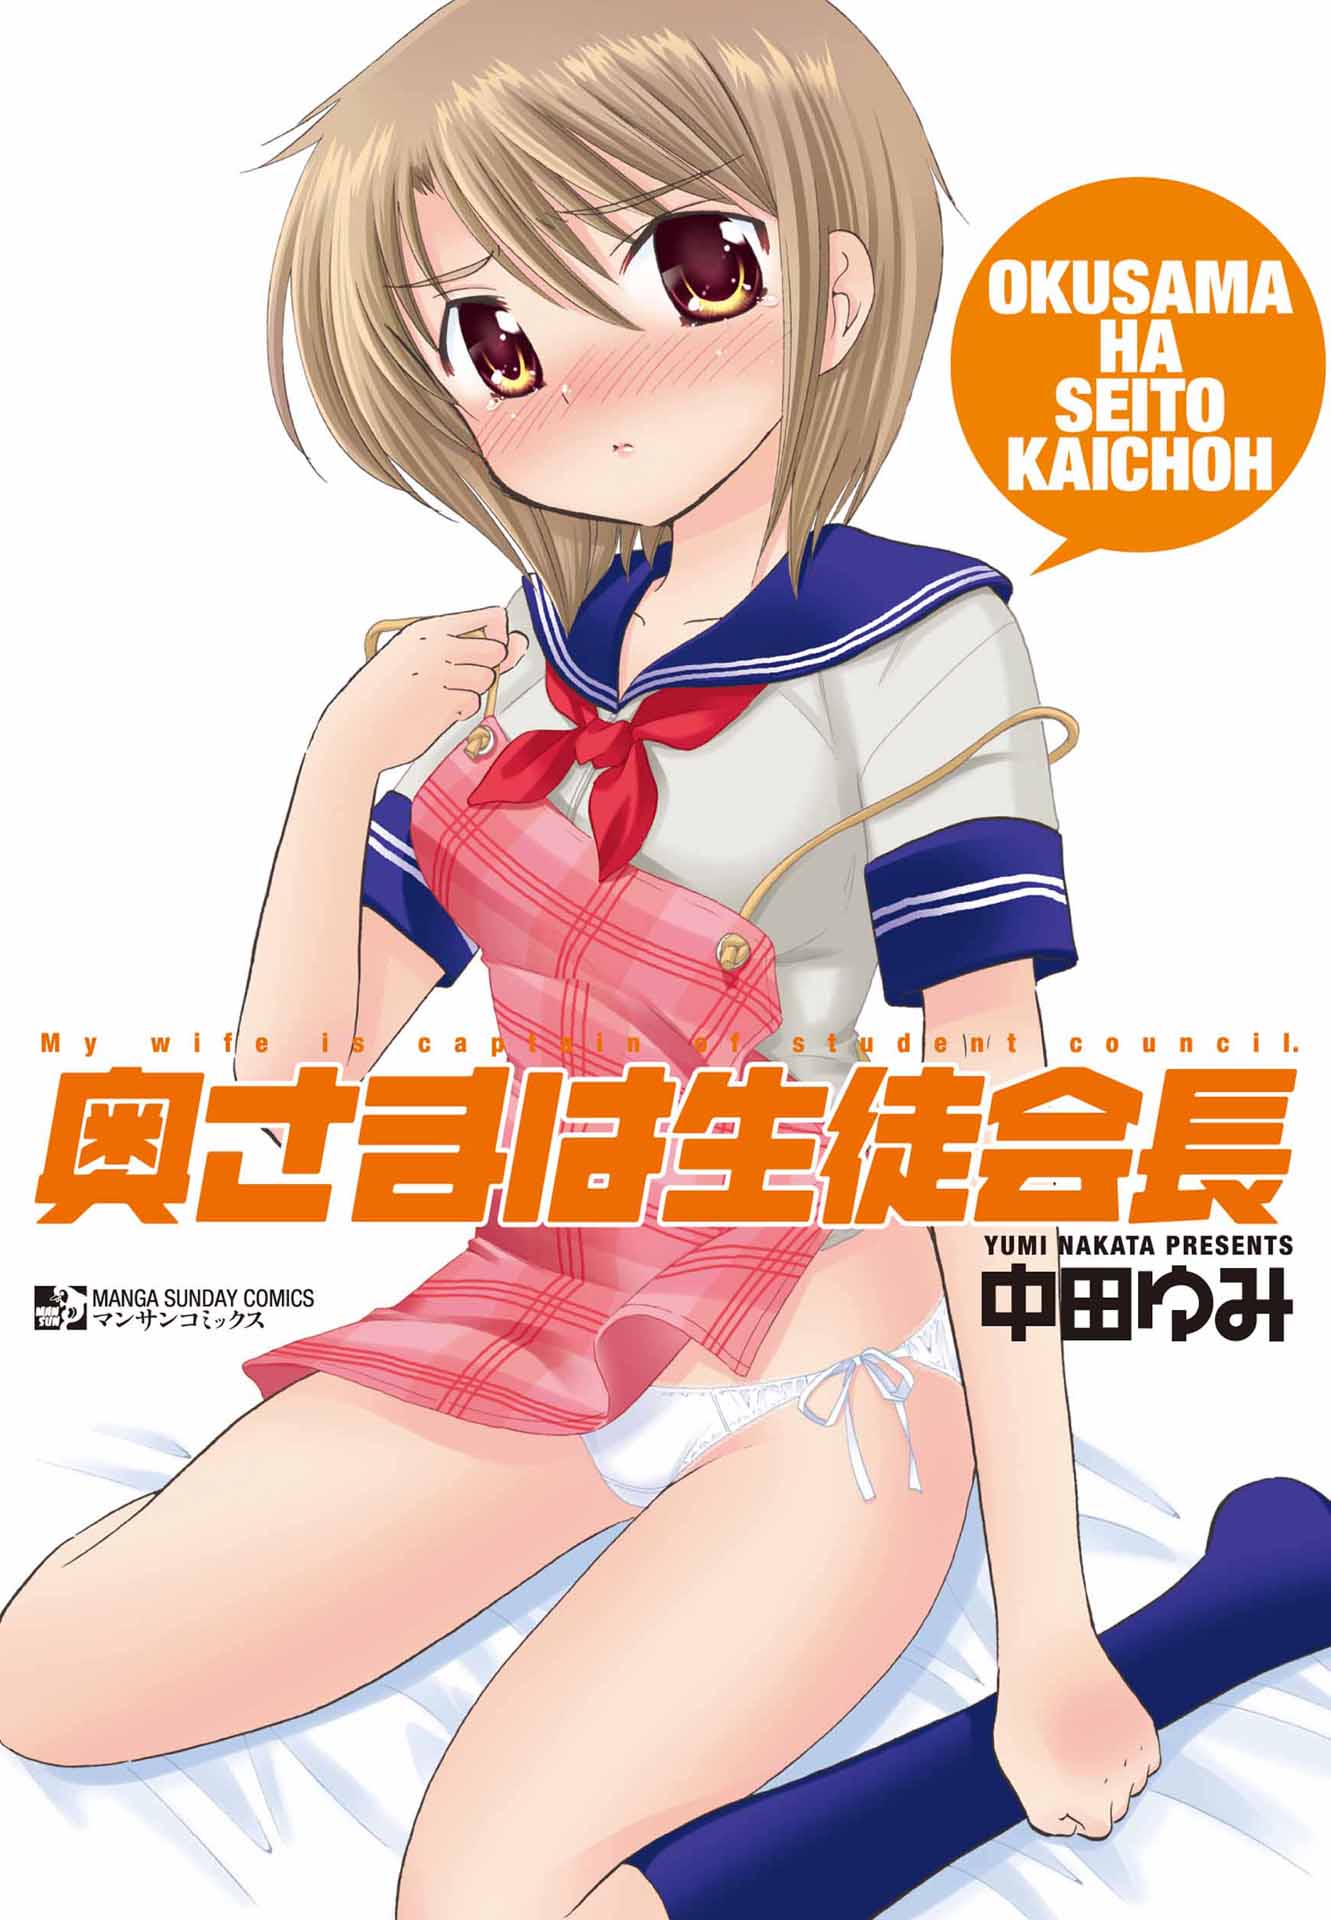 Comics porno okusama wa seito kaicho